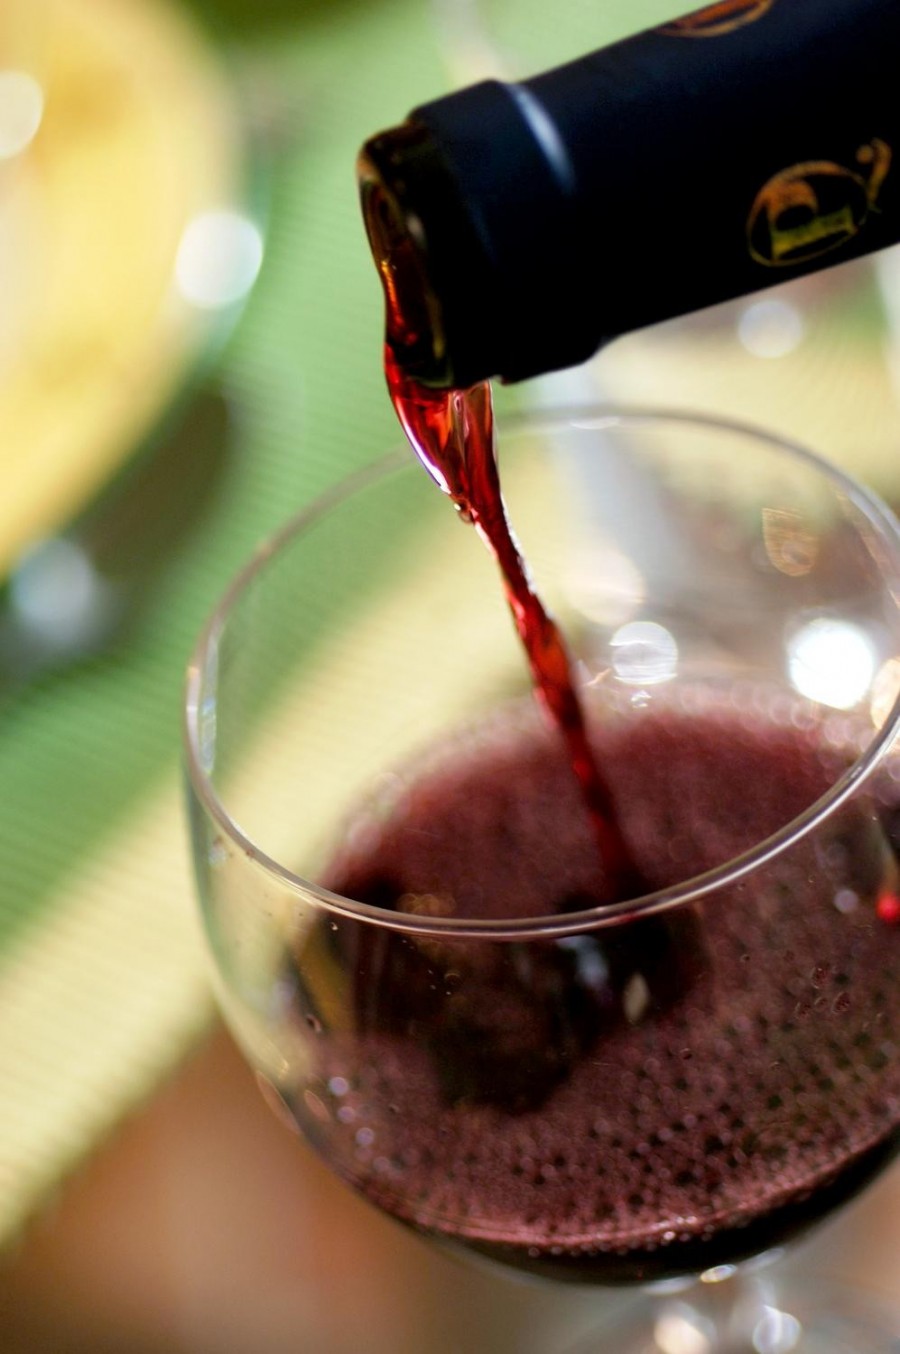 Vin eco, vândut ca vin de masă - Ecologicul de Bujoru şi poticnelile comerciale